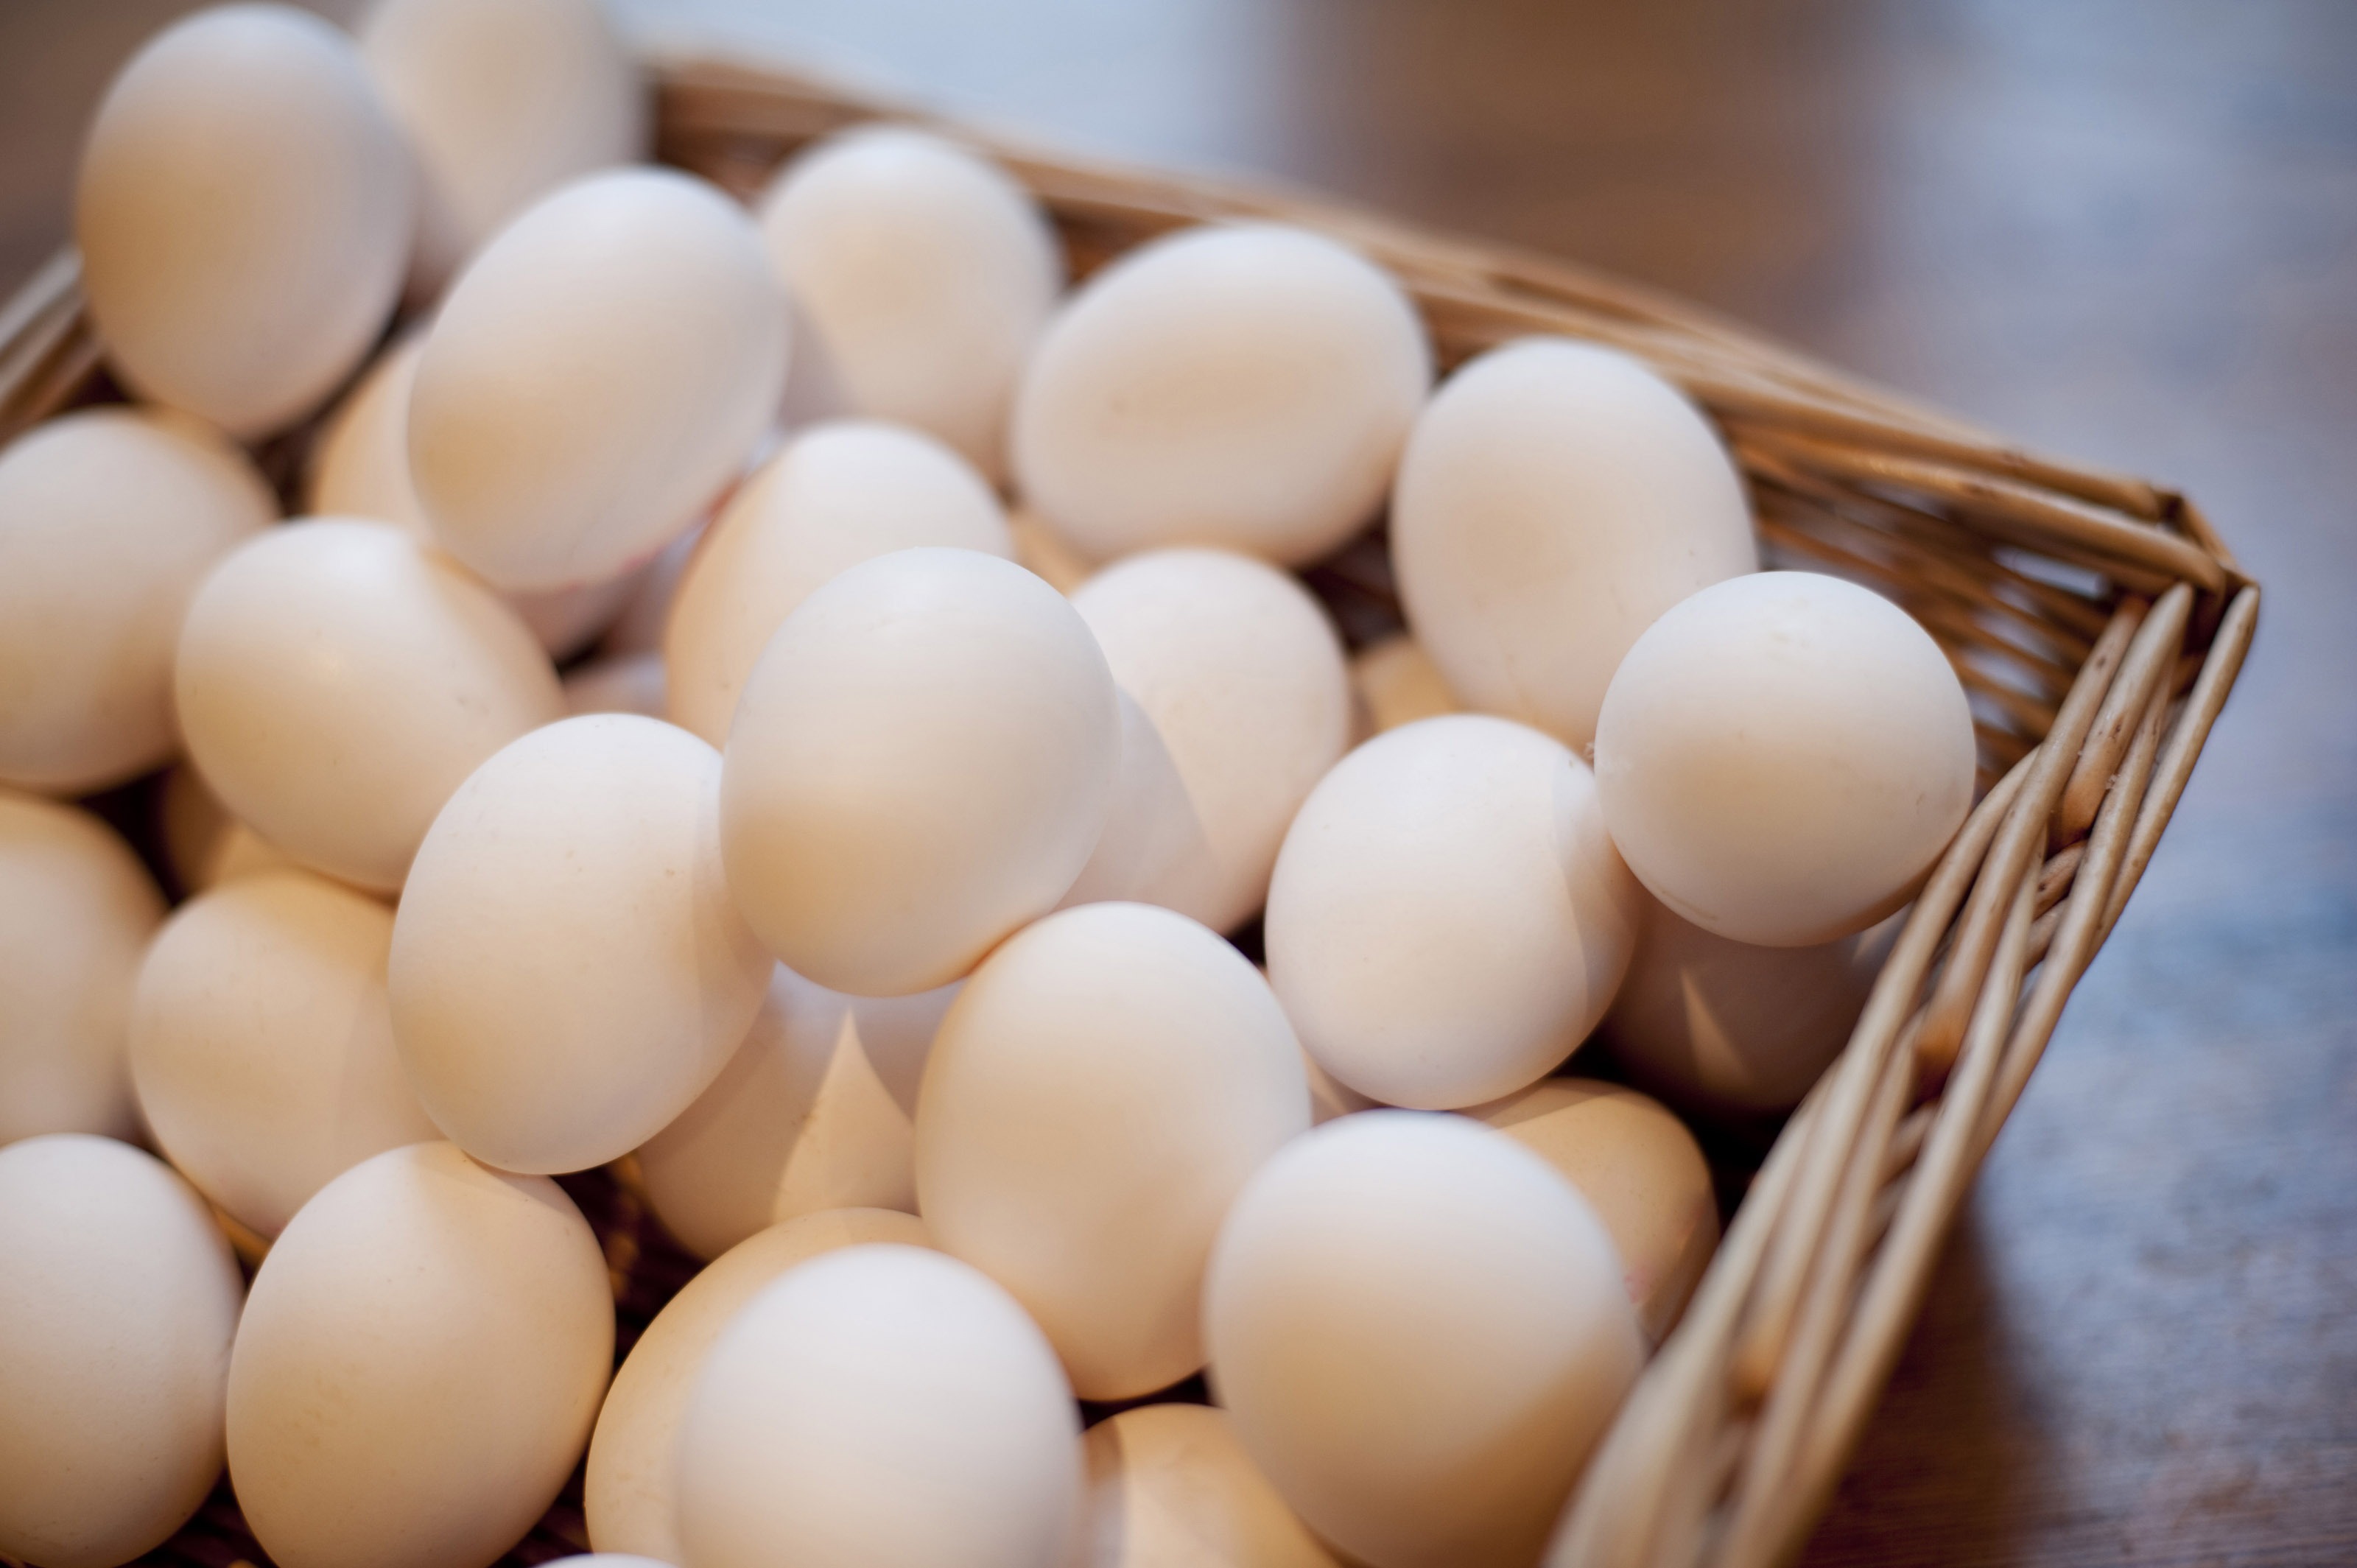 انواع تخم مرغ بسته بندی شده در بازار چند؟